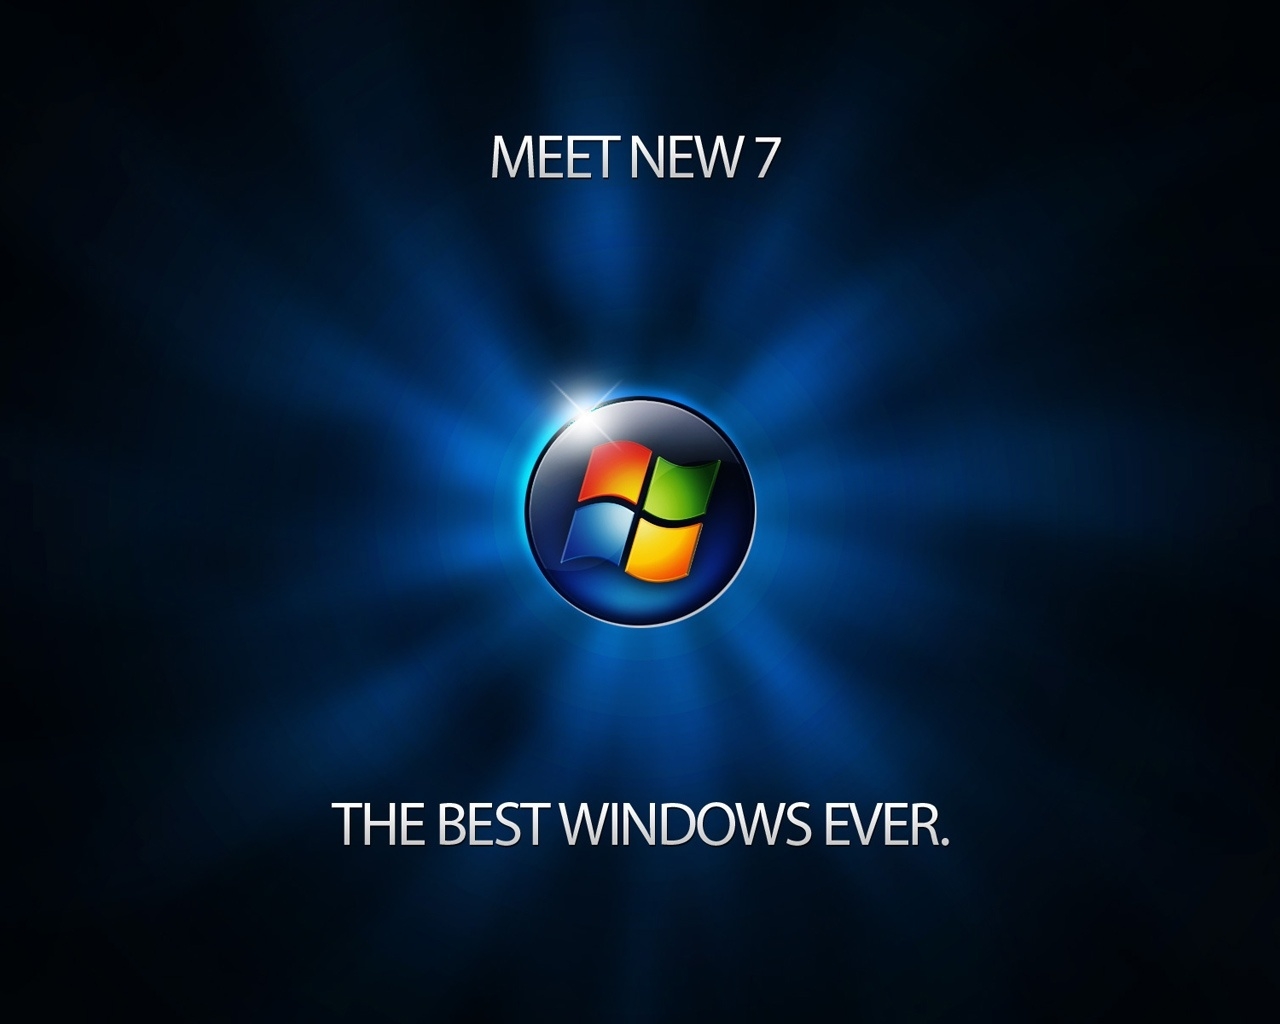 Meet Windows 7 for 1280 x 1024 resolution